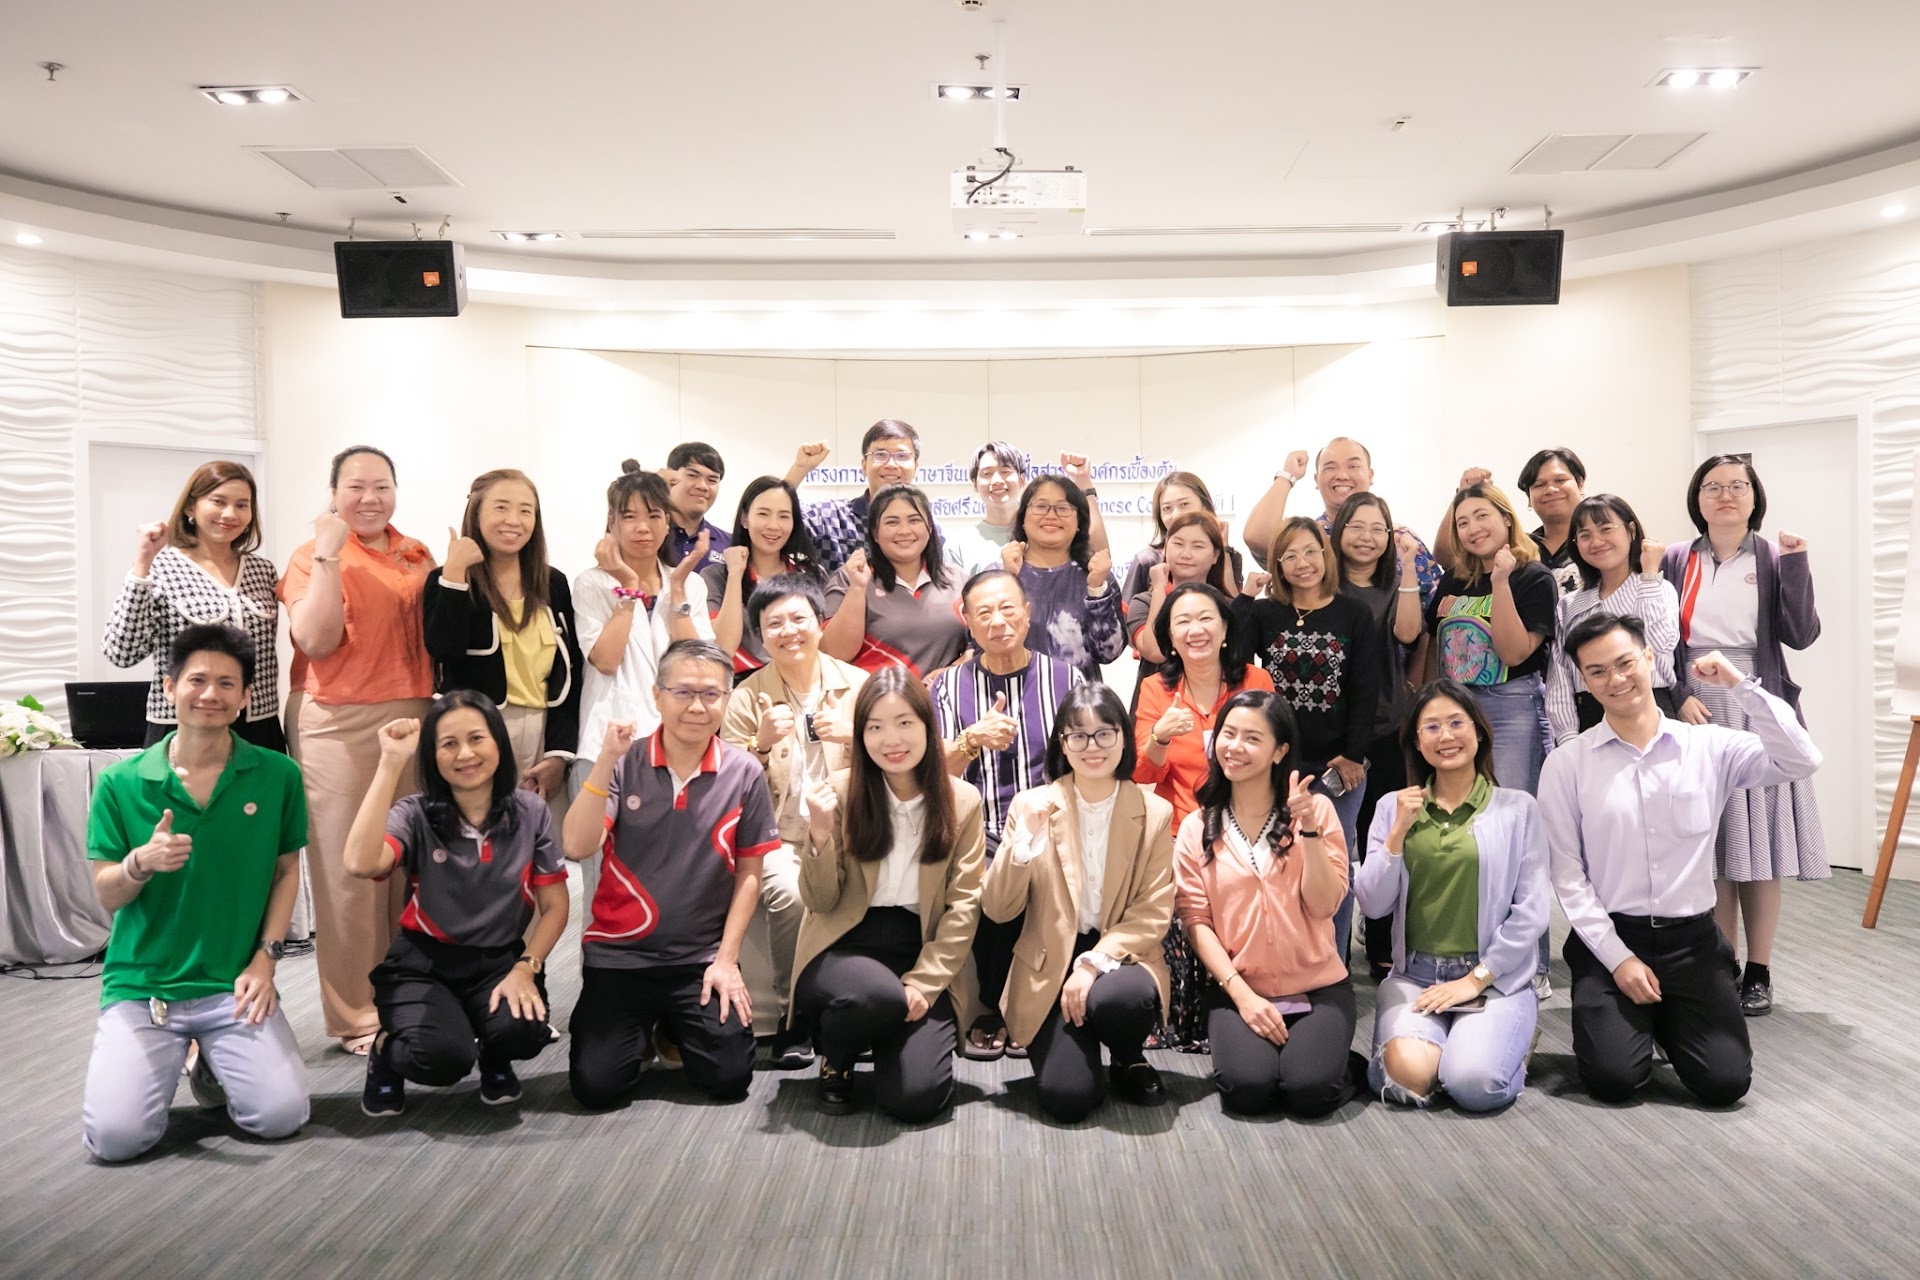 โครงการอบรมภาษาจีนเพื่อการสื่อสารในองค์กรเบื้องต้นสำหรับบุคลากรมหาวิทยาลัยศรีนครินทรวิโรฒ (Chinese Camp) ครั้งที่ 1